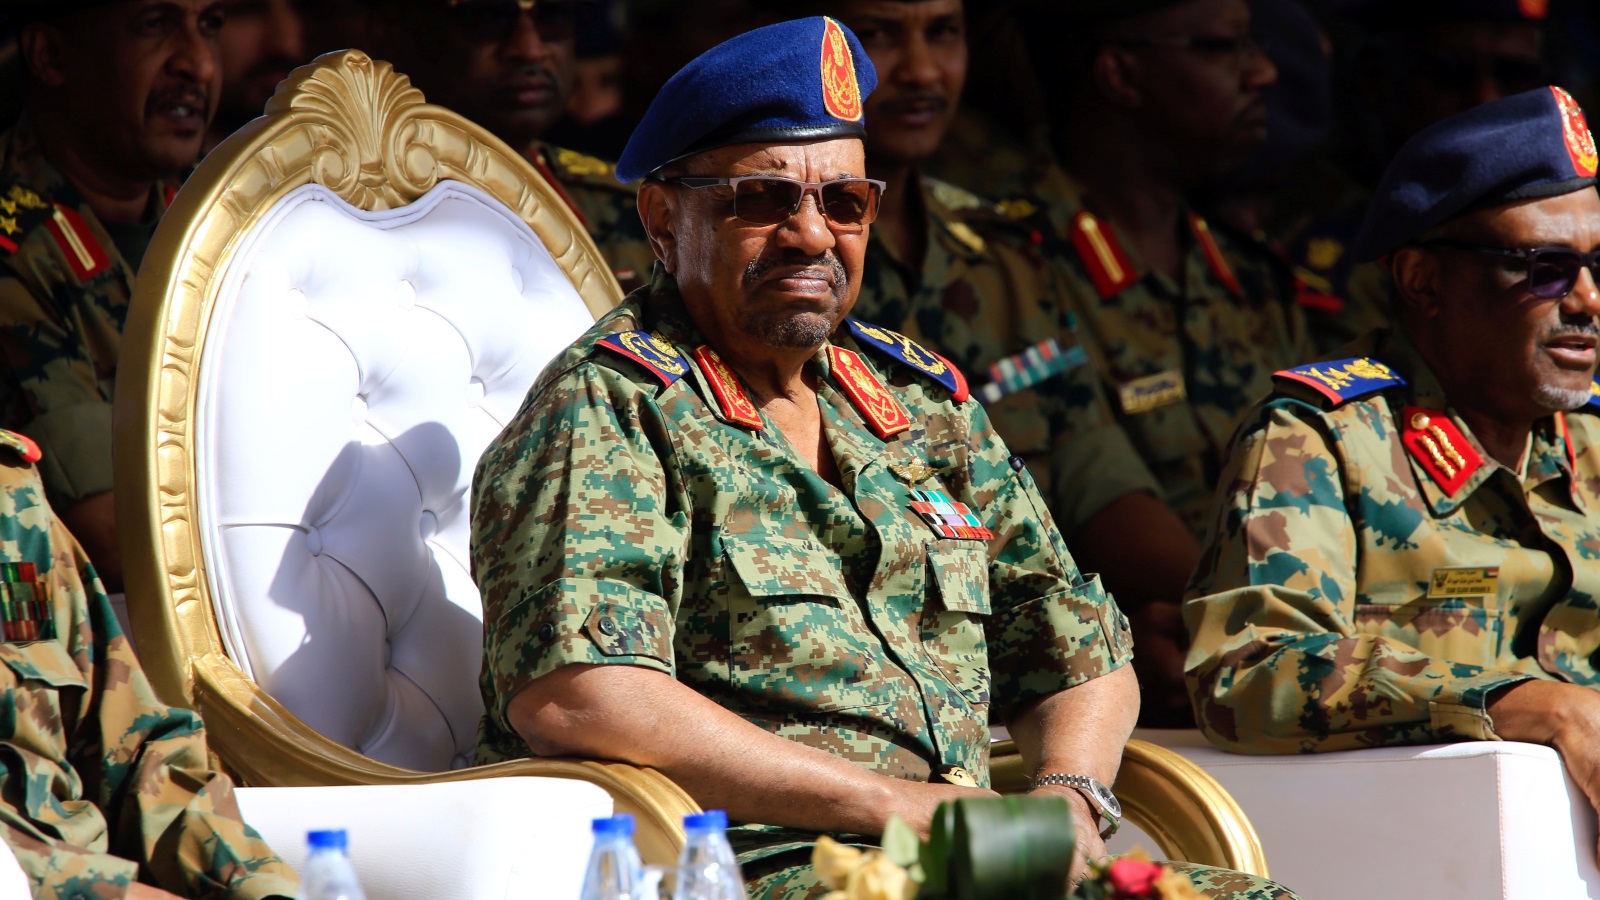 تهدف واشنطن من قرارها إلغاء العقوبات الاقتصادية مع إبقاء السودان في قائمة الدول الراعية للإرهاب، لضمان خضوع الخرطوم لابتزاز وإملاءات واشنطن في ما يسمى بالإرهاب